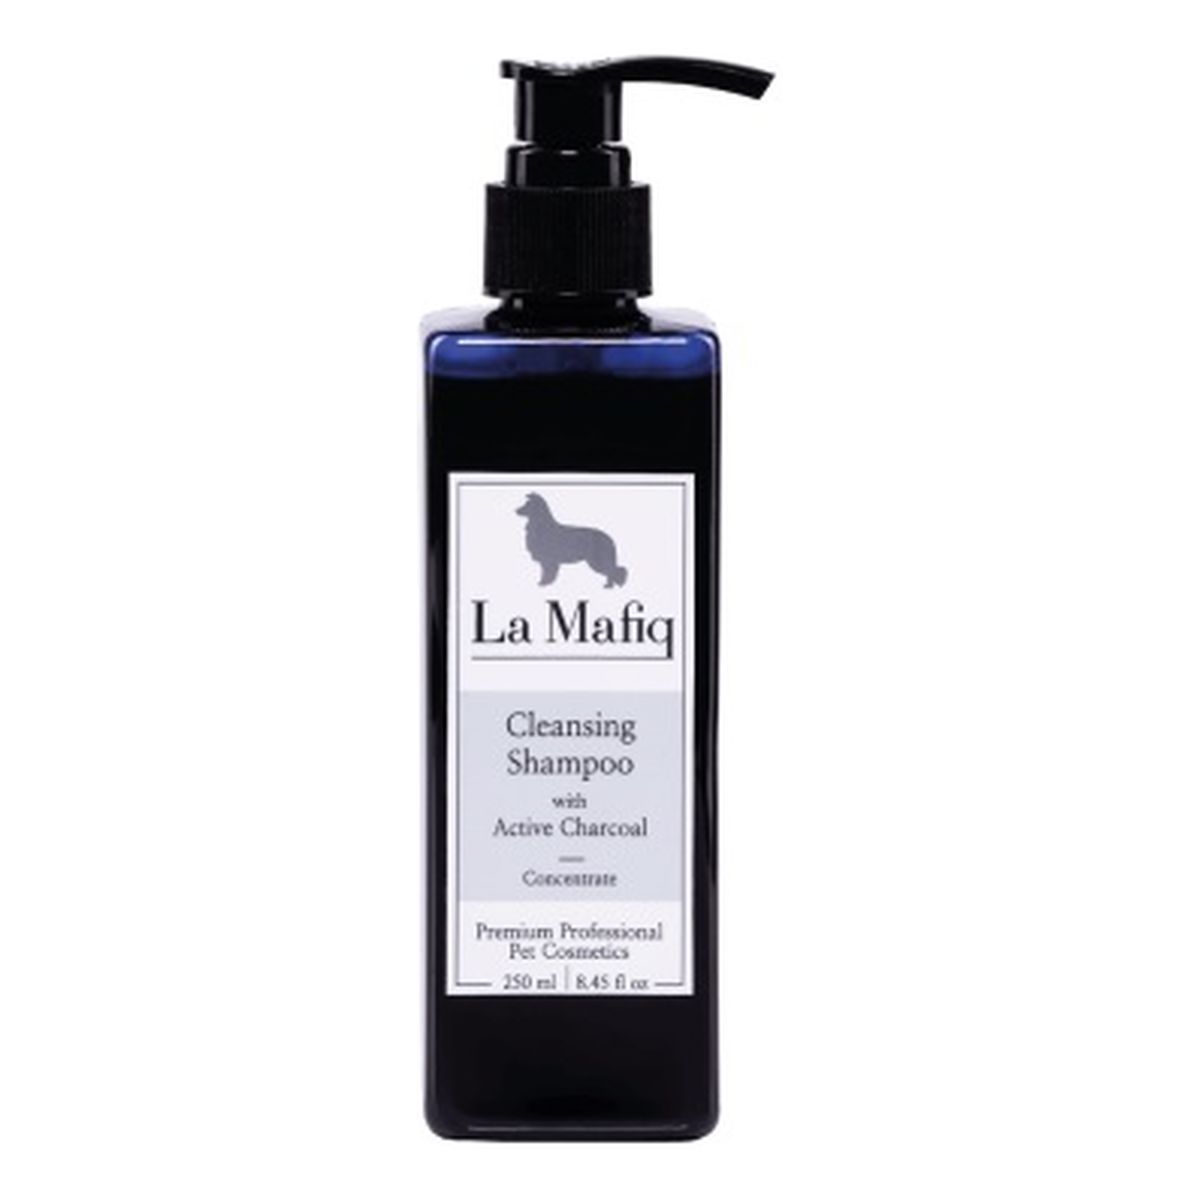 La Mafiq Cleansing Shampoo szampon dla zwierząt oczyszczający z aktywnym węglem - koncentrat 250ml